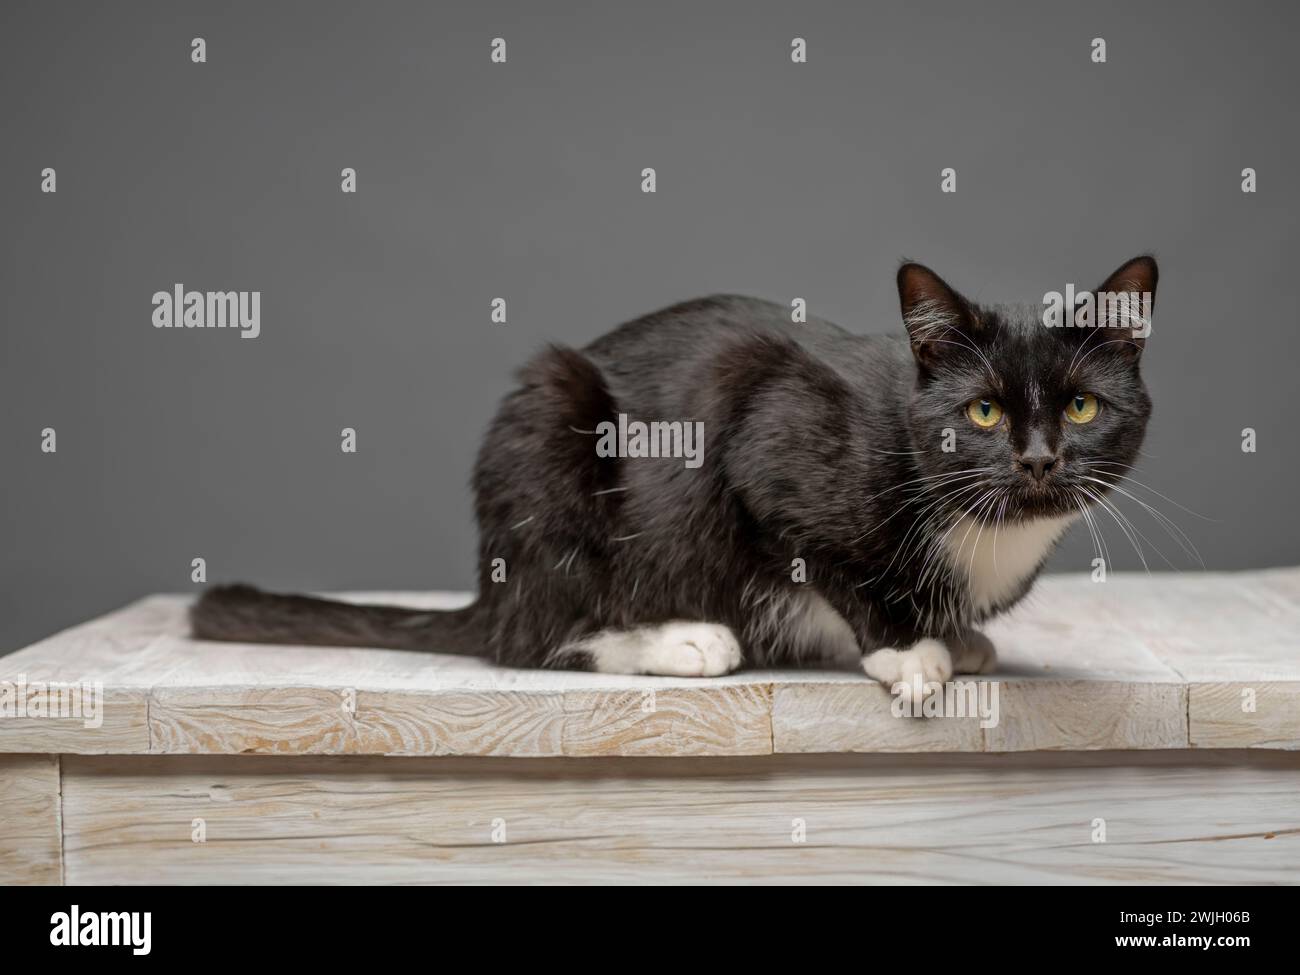 Studio-Aufnahme einer schwarz-weißen Katzenseite auf der Kamera, die sich auf einem weiß getünchten Tisch hockt. Vor grauem Hintergrund. Stockfoto